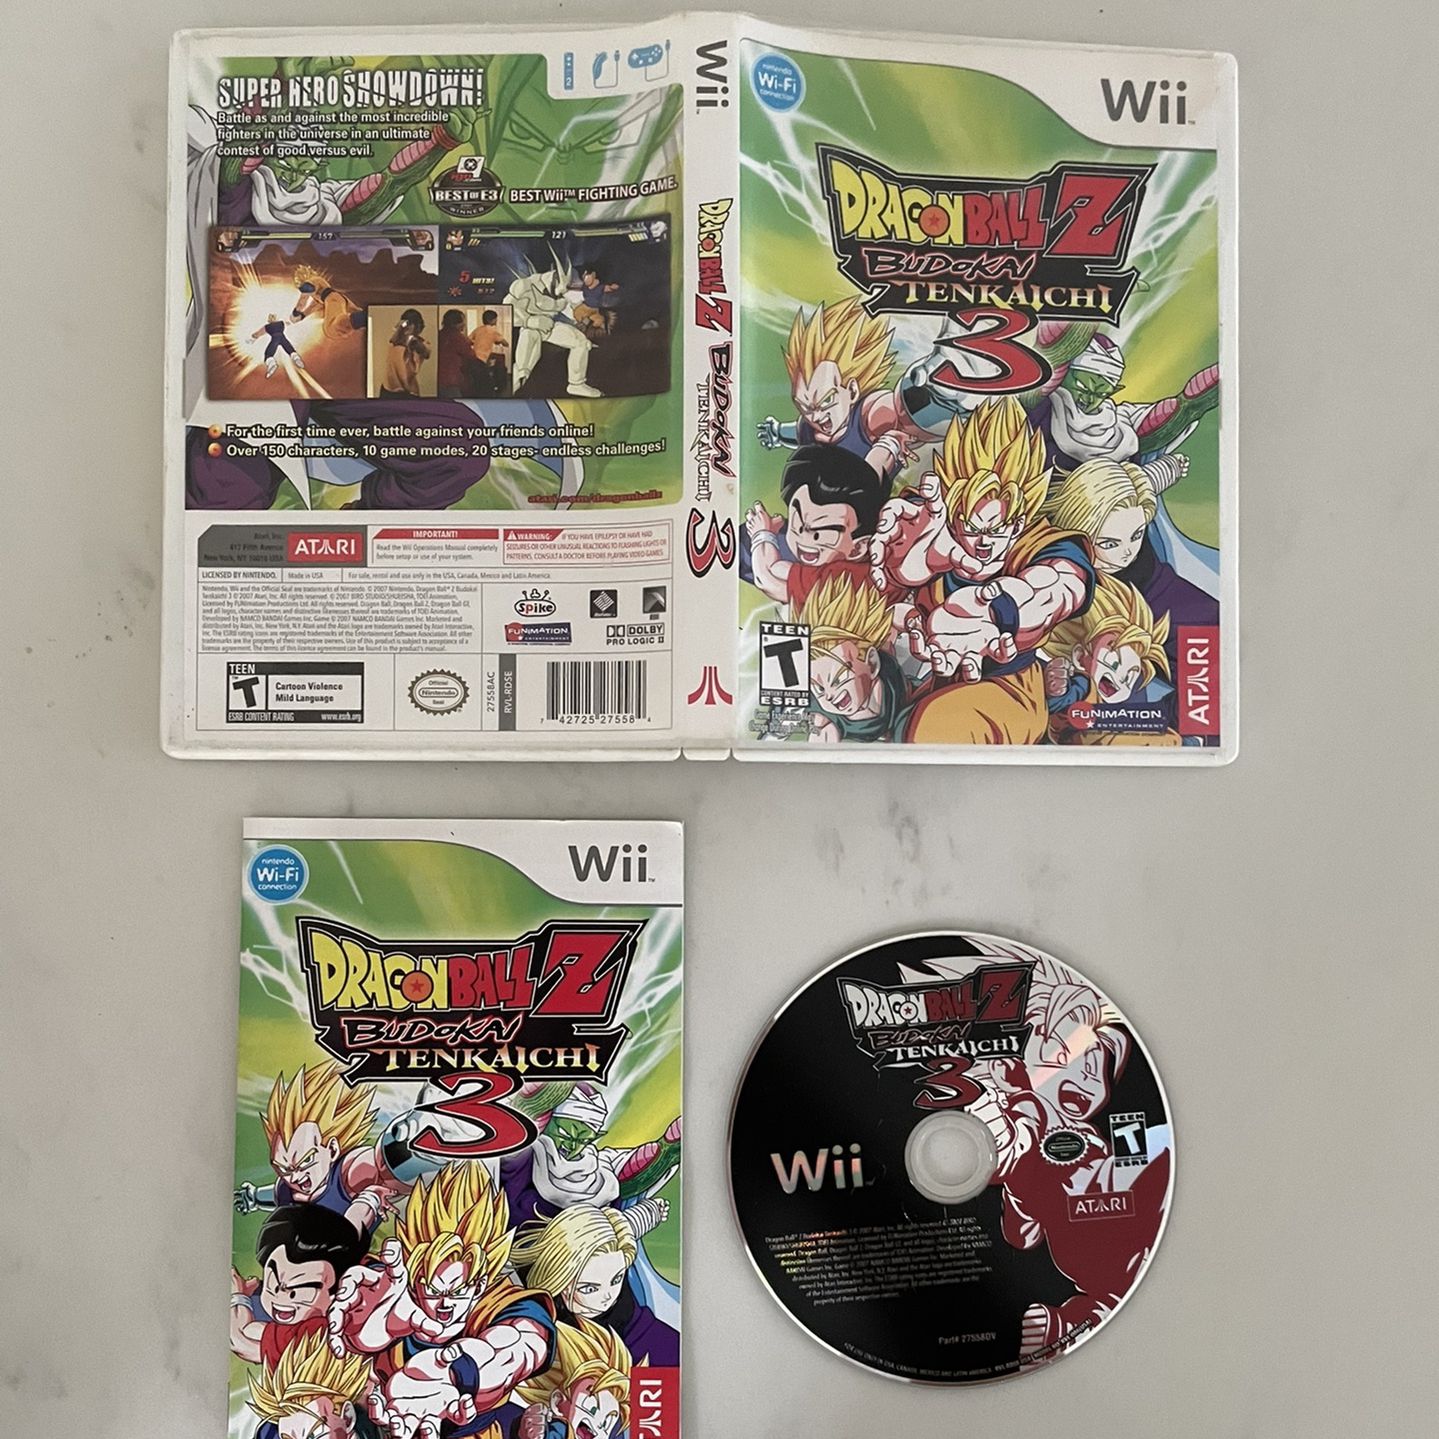 Dragon Ball Z: Budokai Tenkaichi 3 (2007), Wii